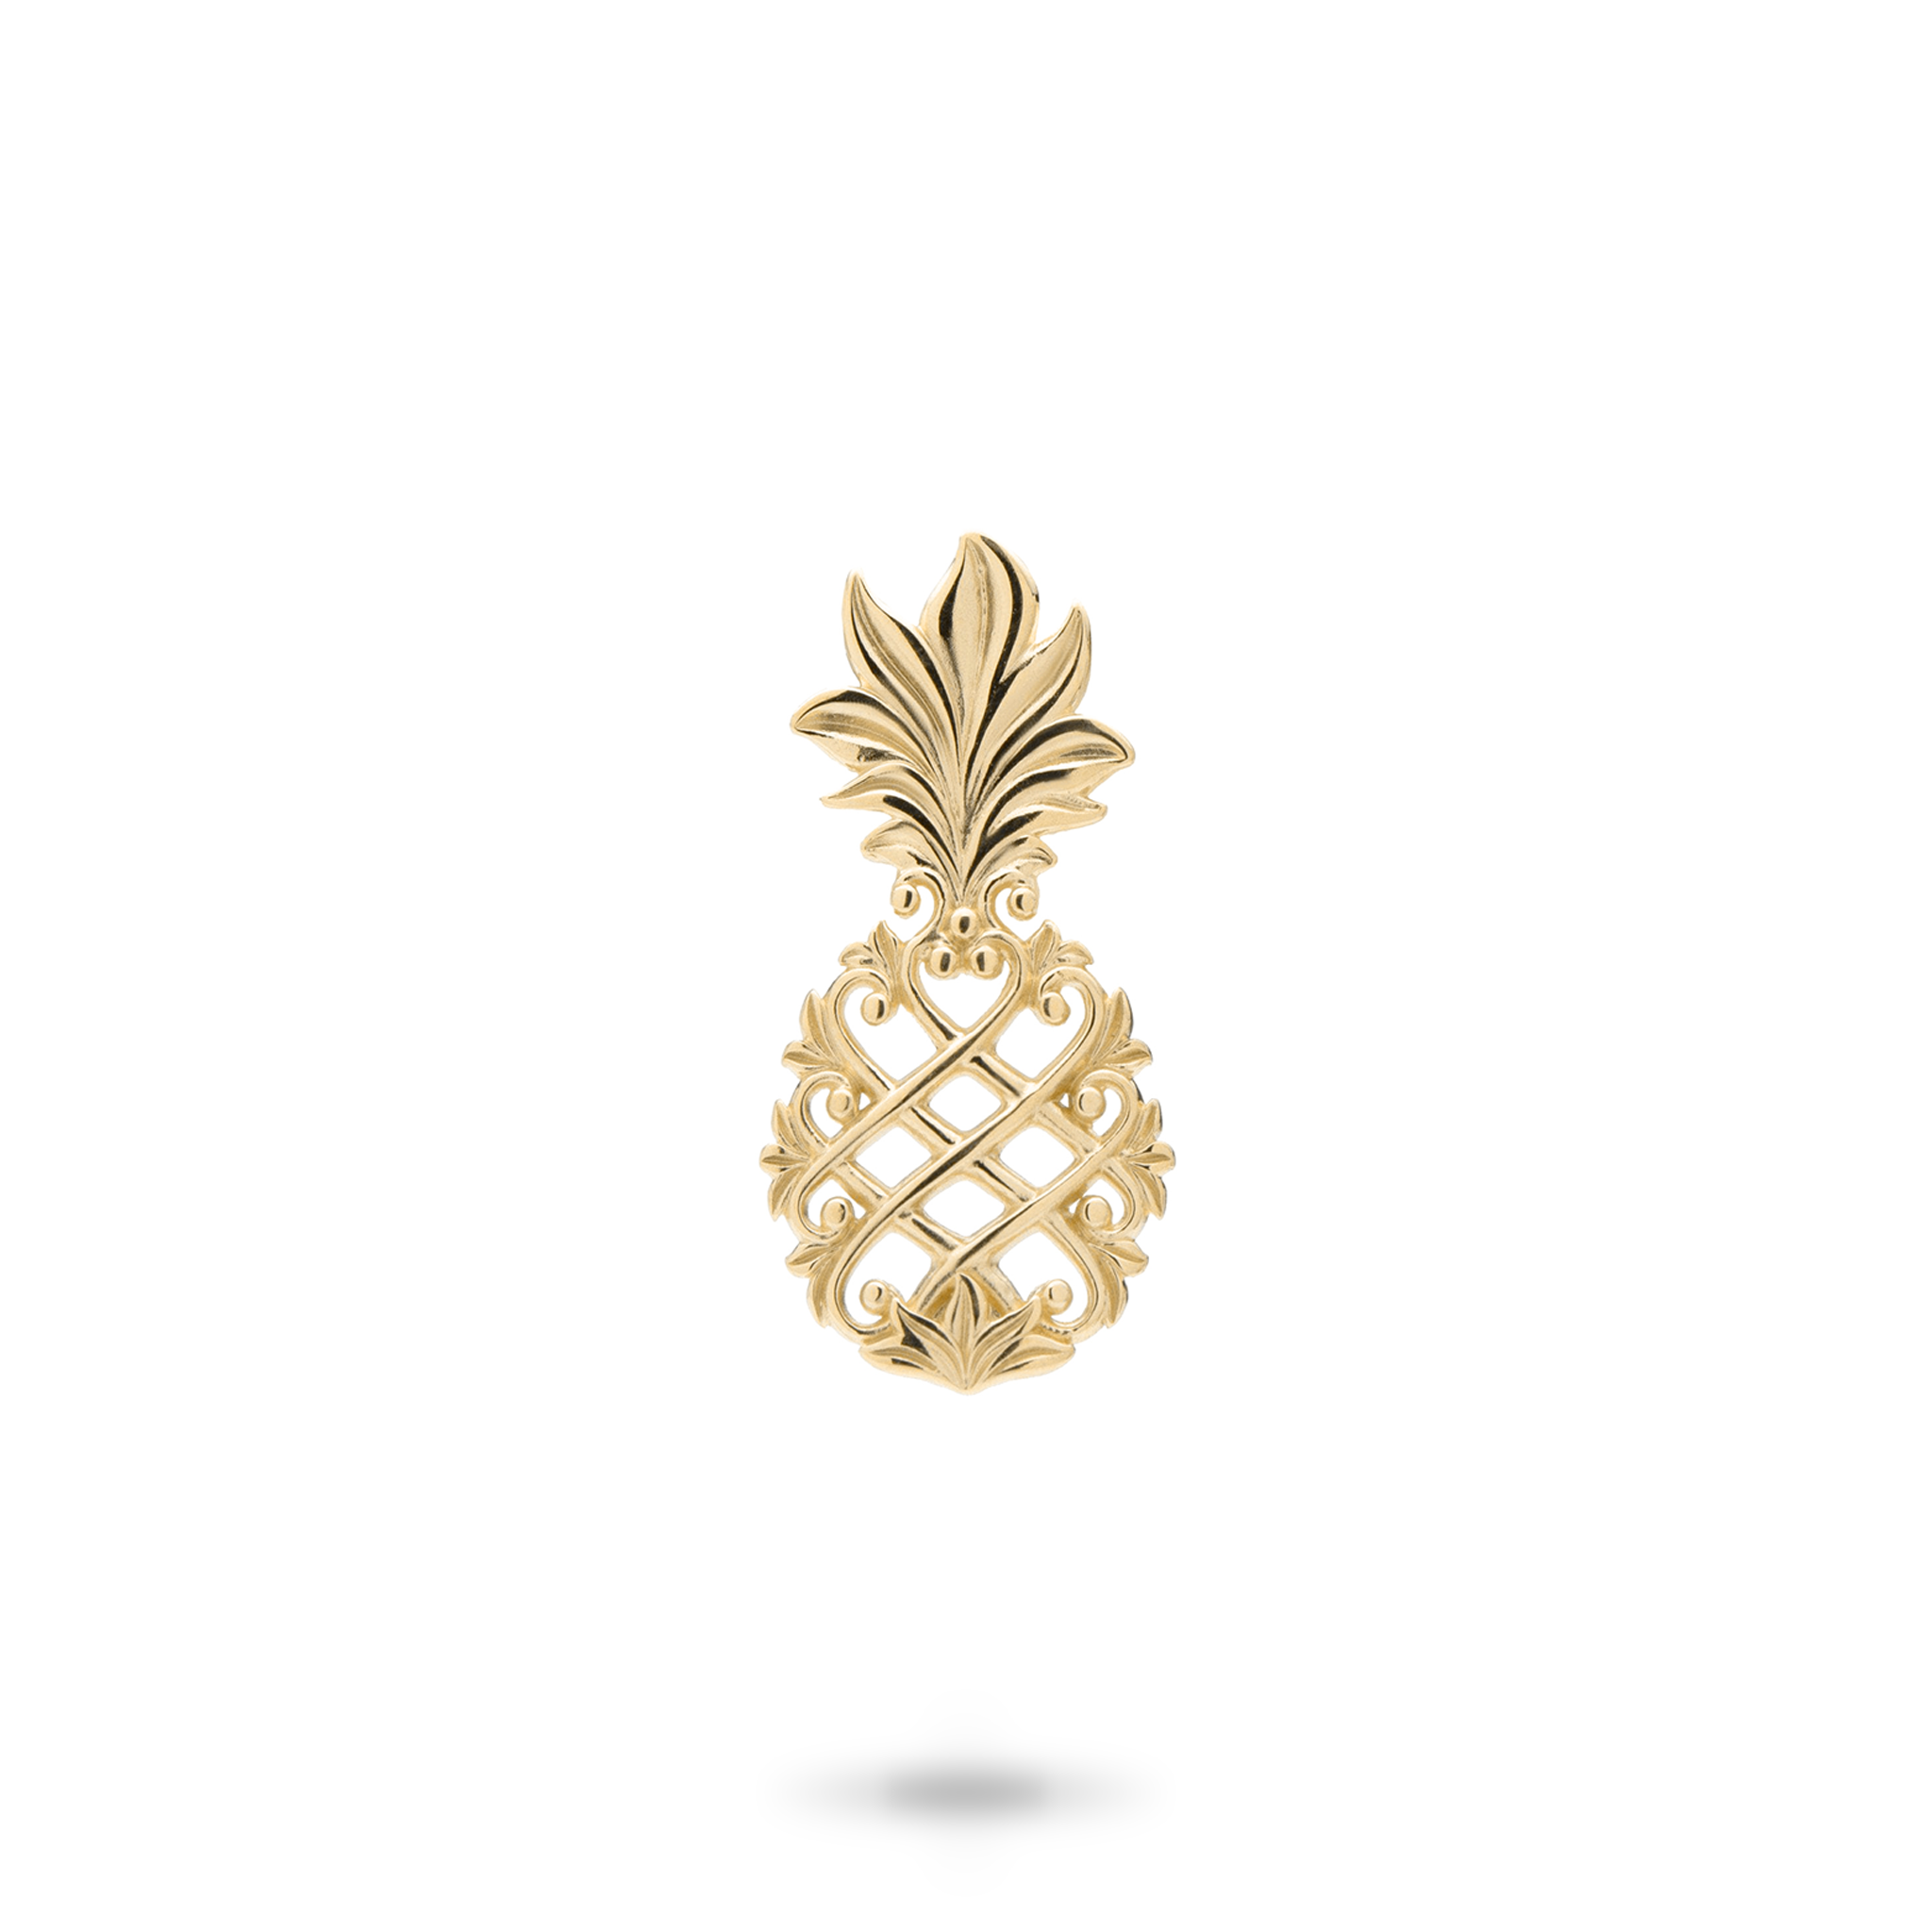 Living Heirloom Pineapple Pendant in Gold - 23mm